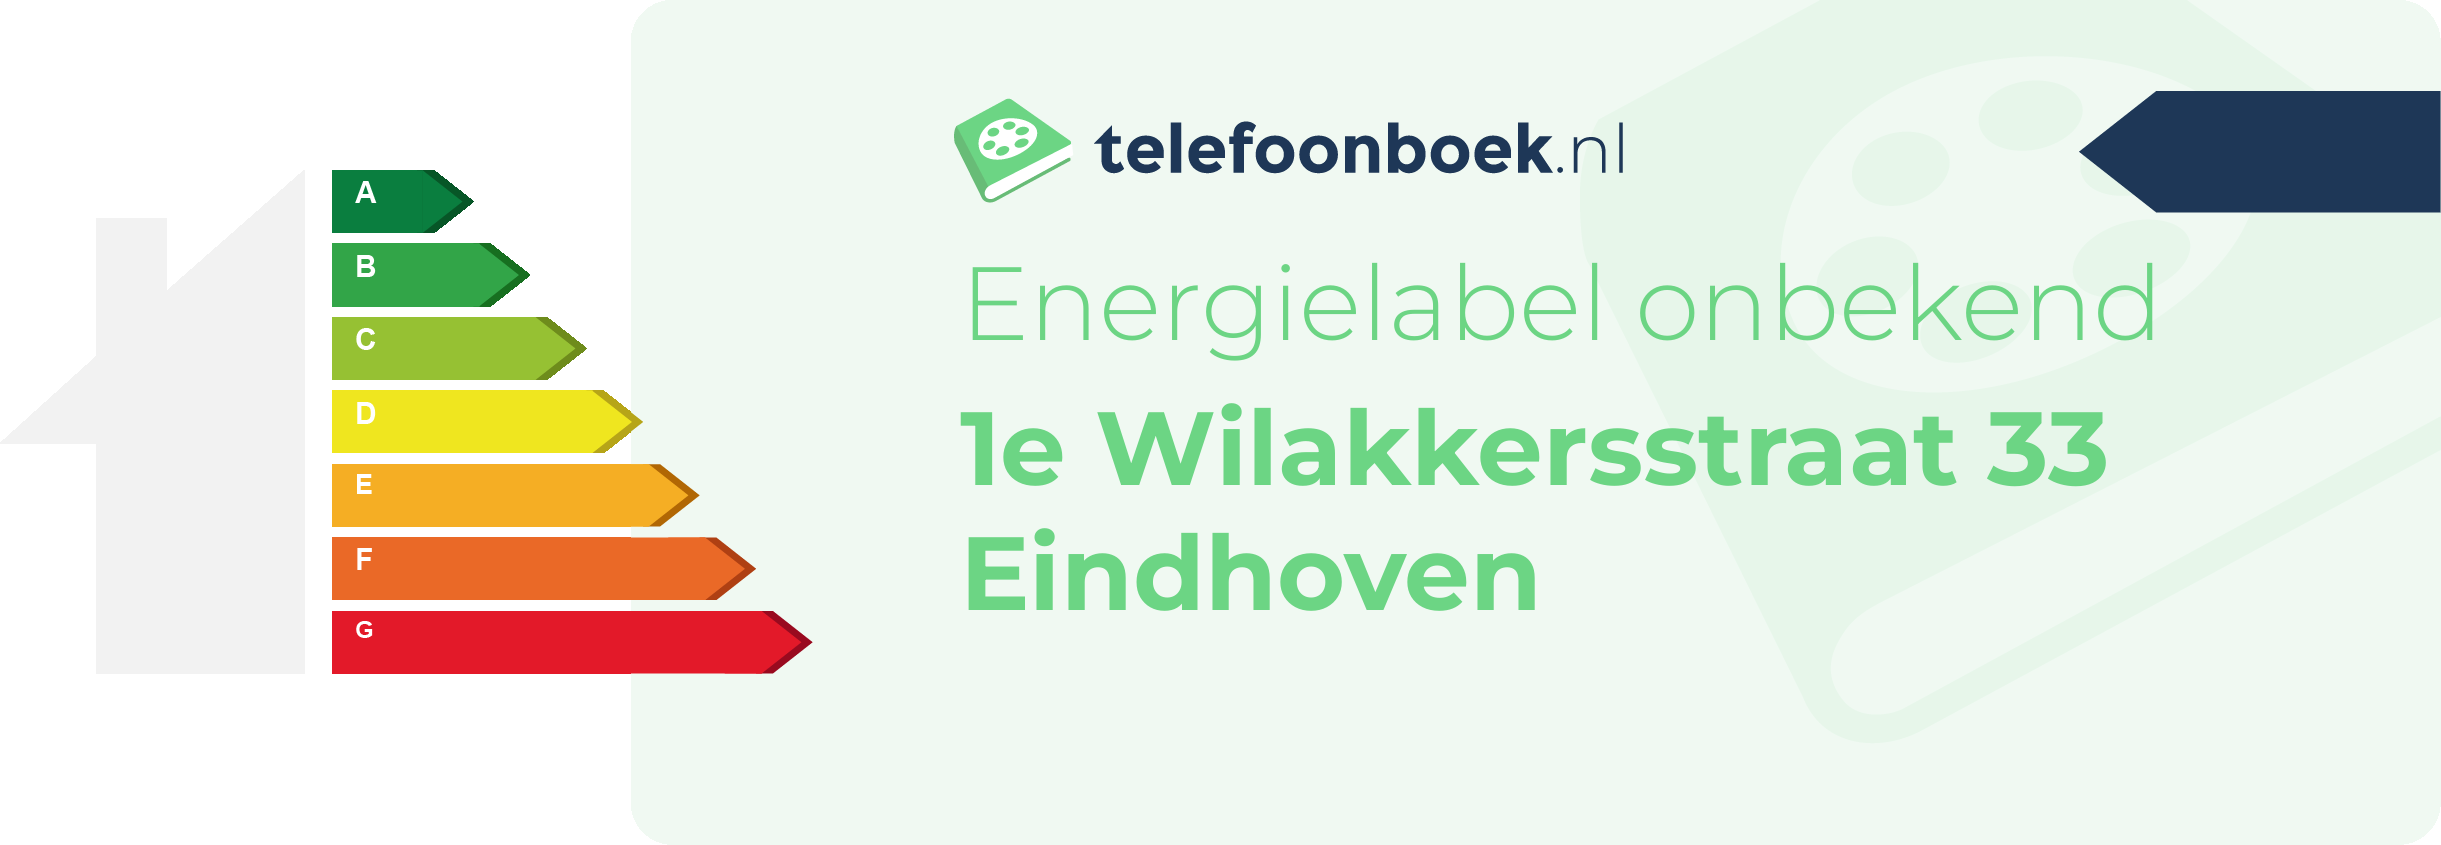 Energielabel 1e Wilakkersstraat 33 Eindhoven